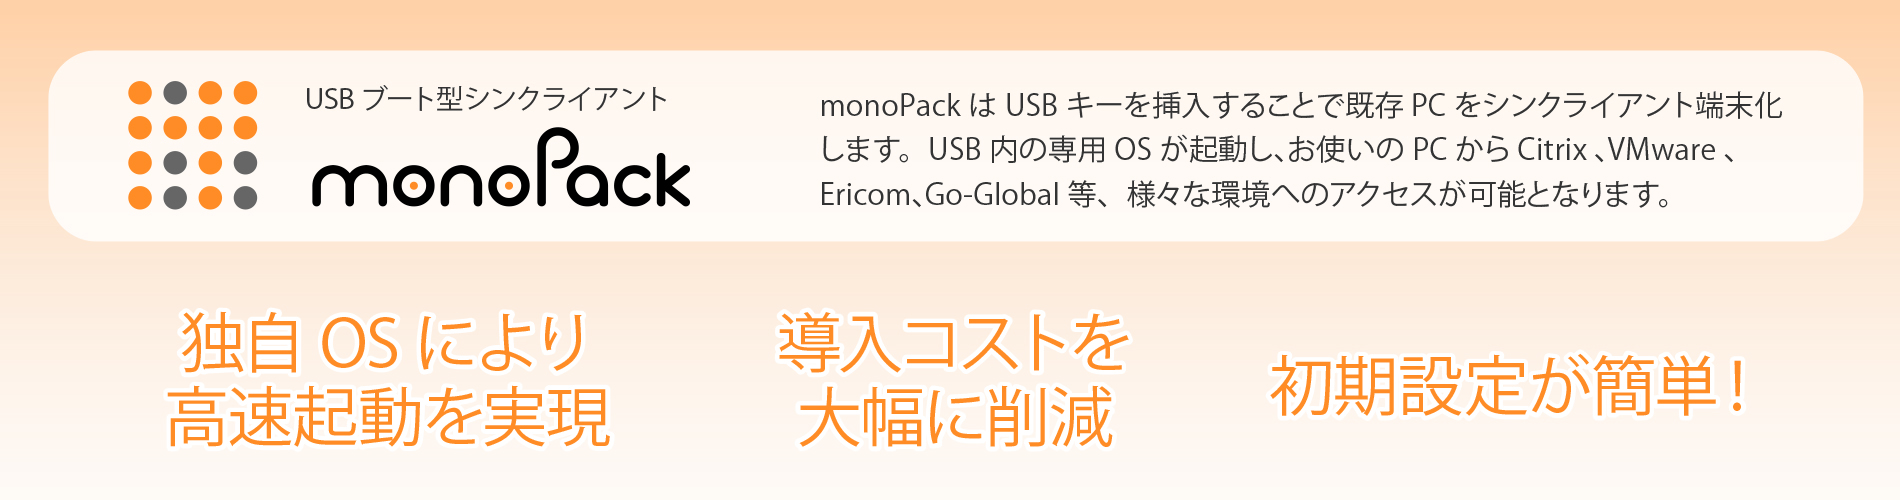 USBブート型のシンクライアント製品「monoPack」